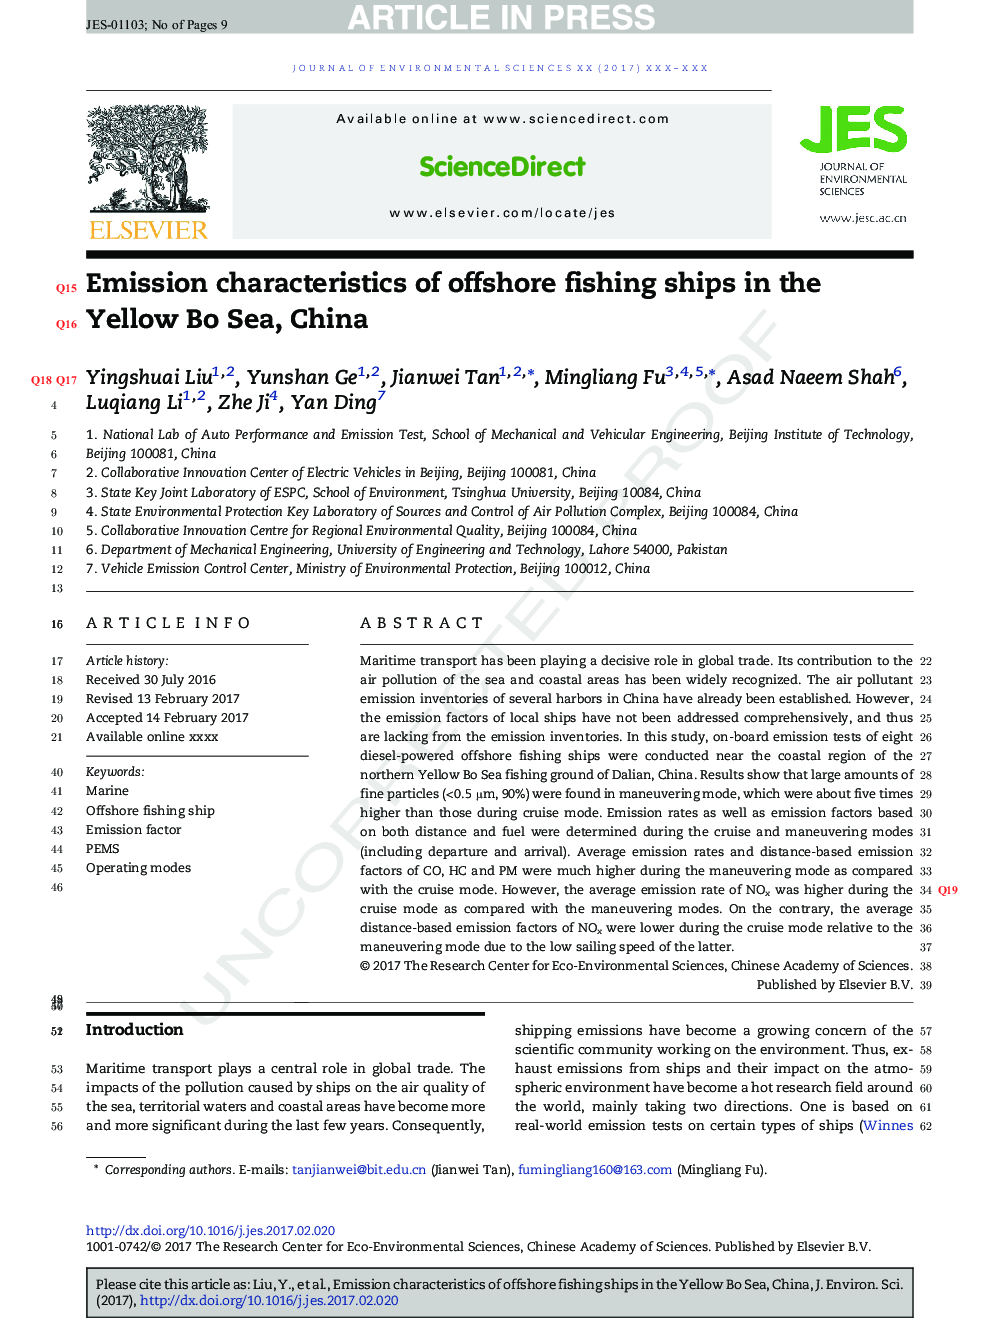 ویژگی های انتشار کشتی های ماهیگیری دریایی در دریای زرد بو، چین 